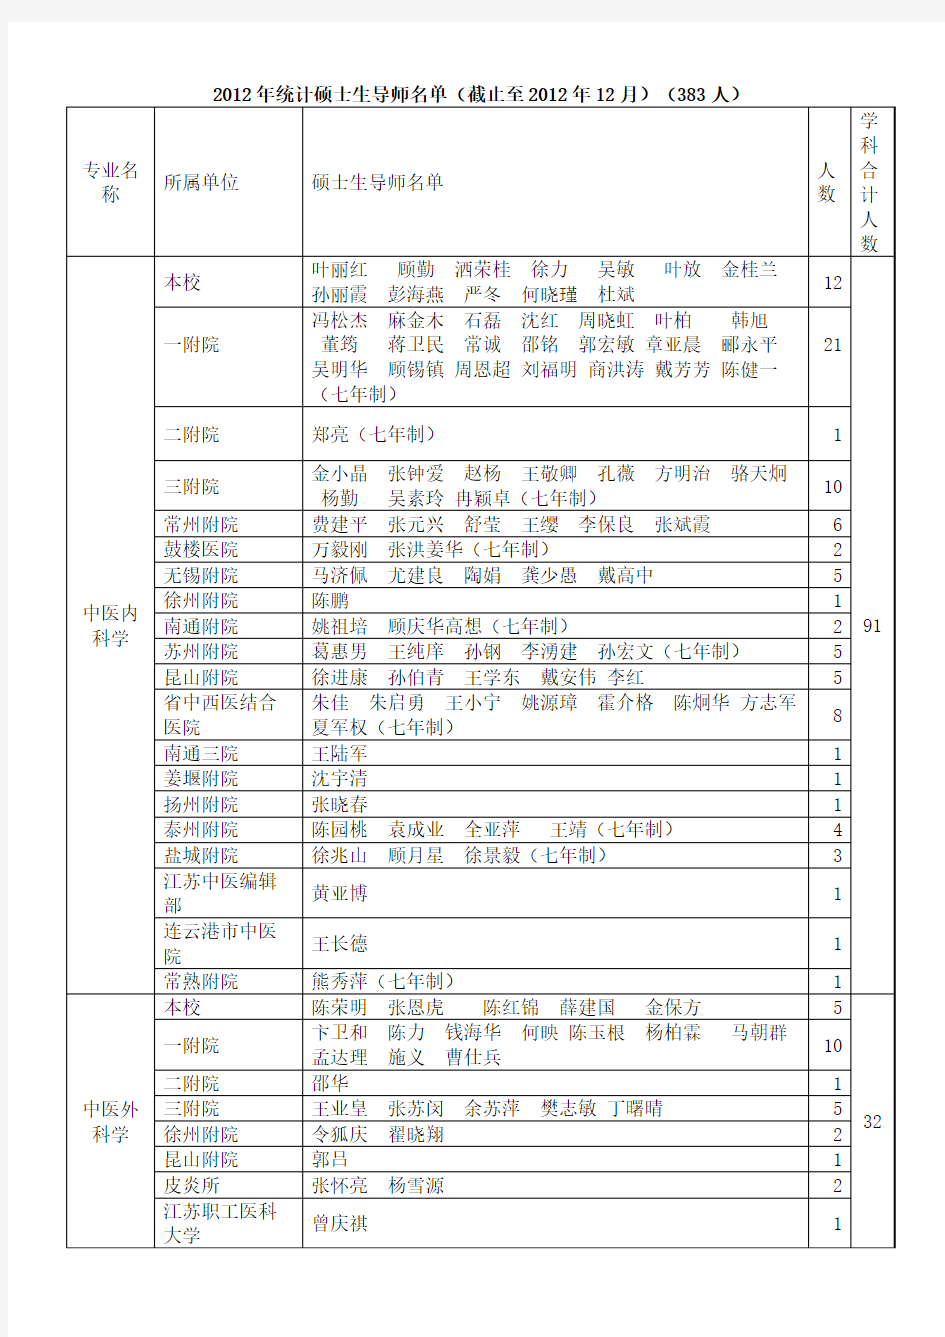 南京中医药大学硕士生导师名单(截止至2012年底)